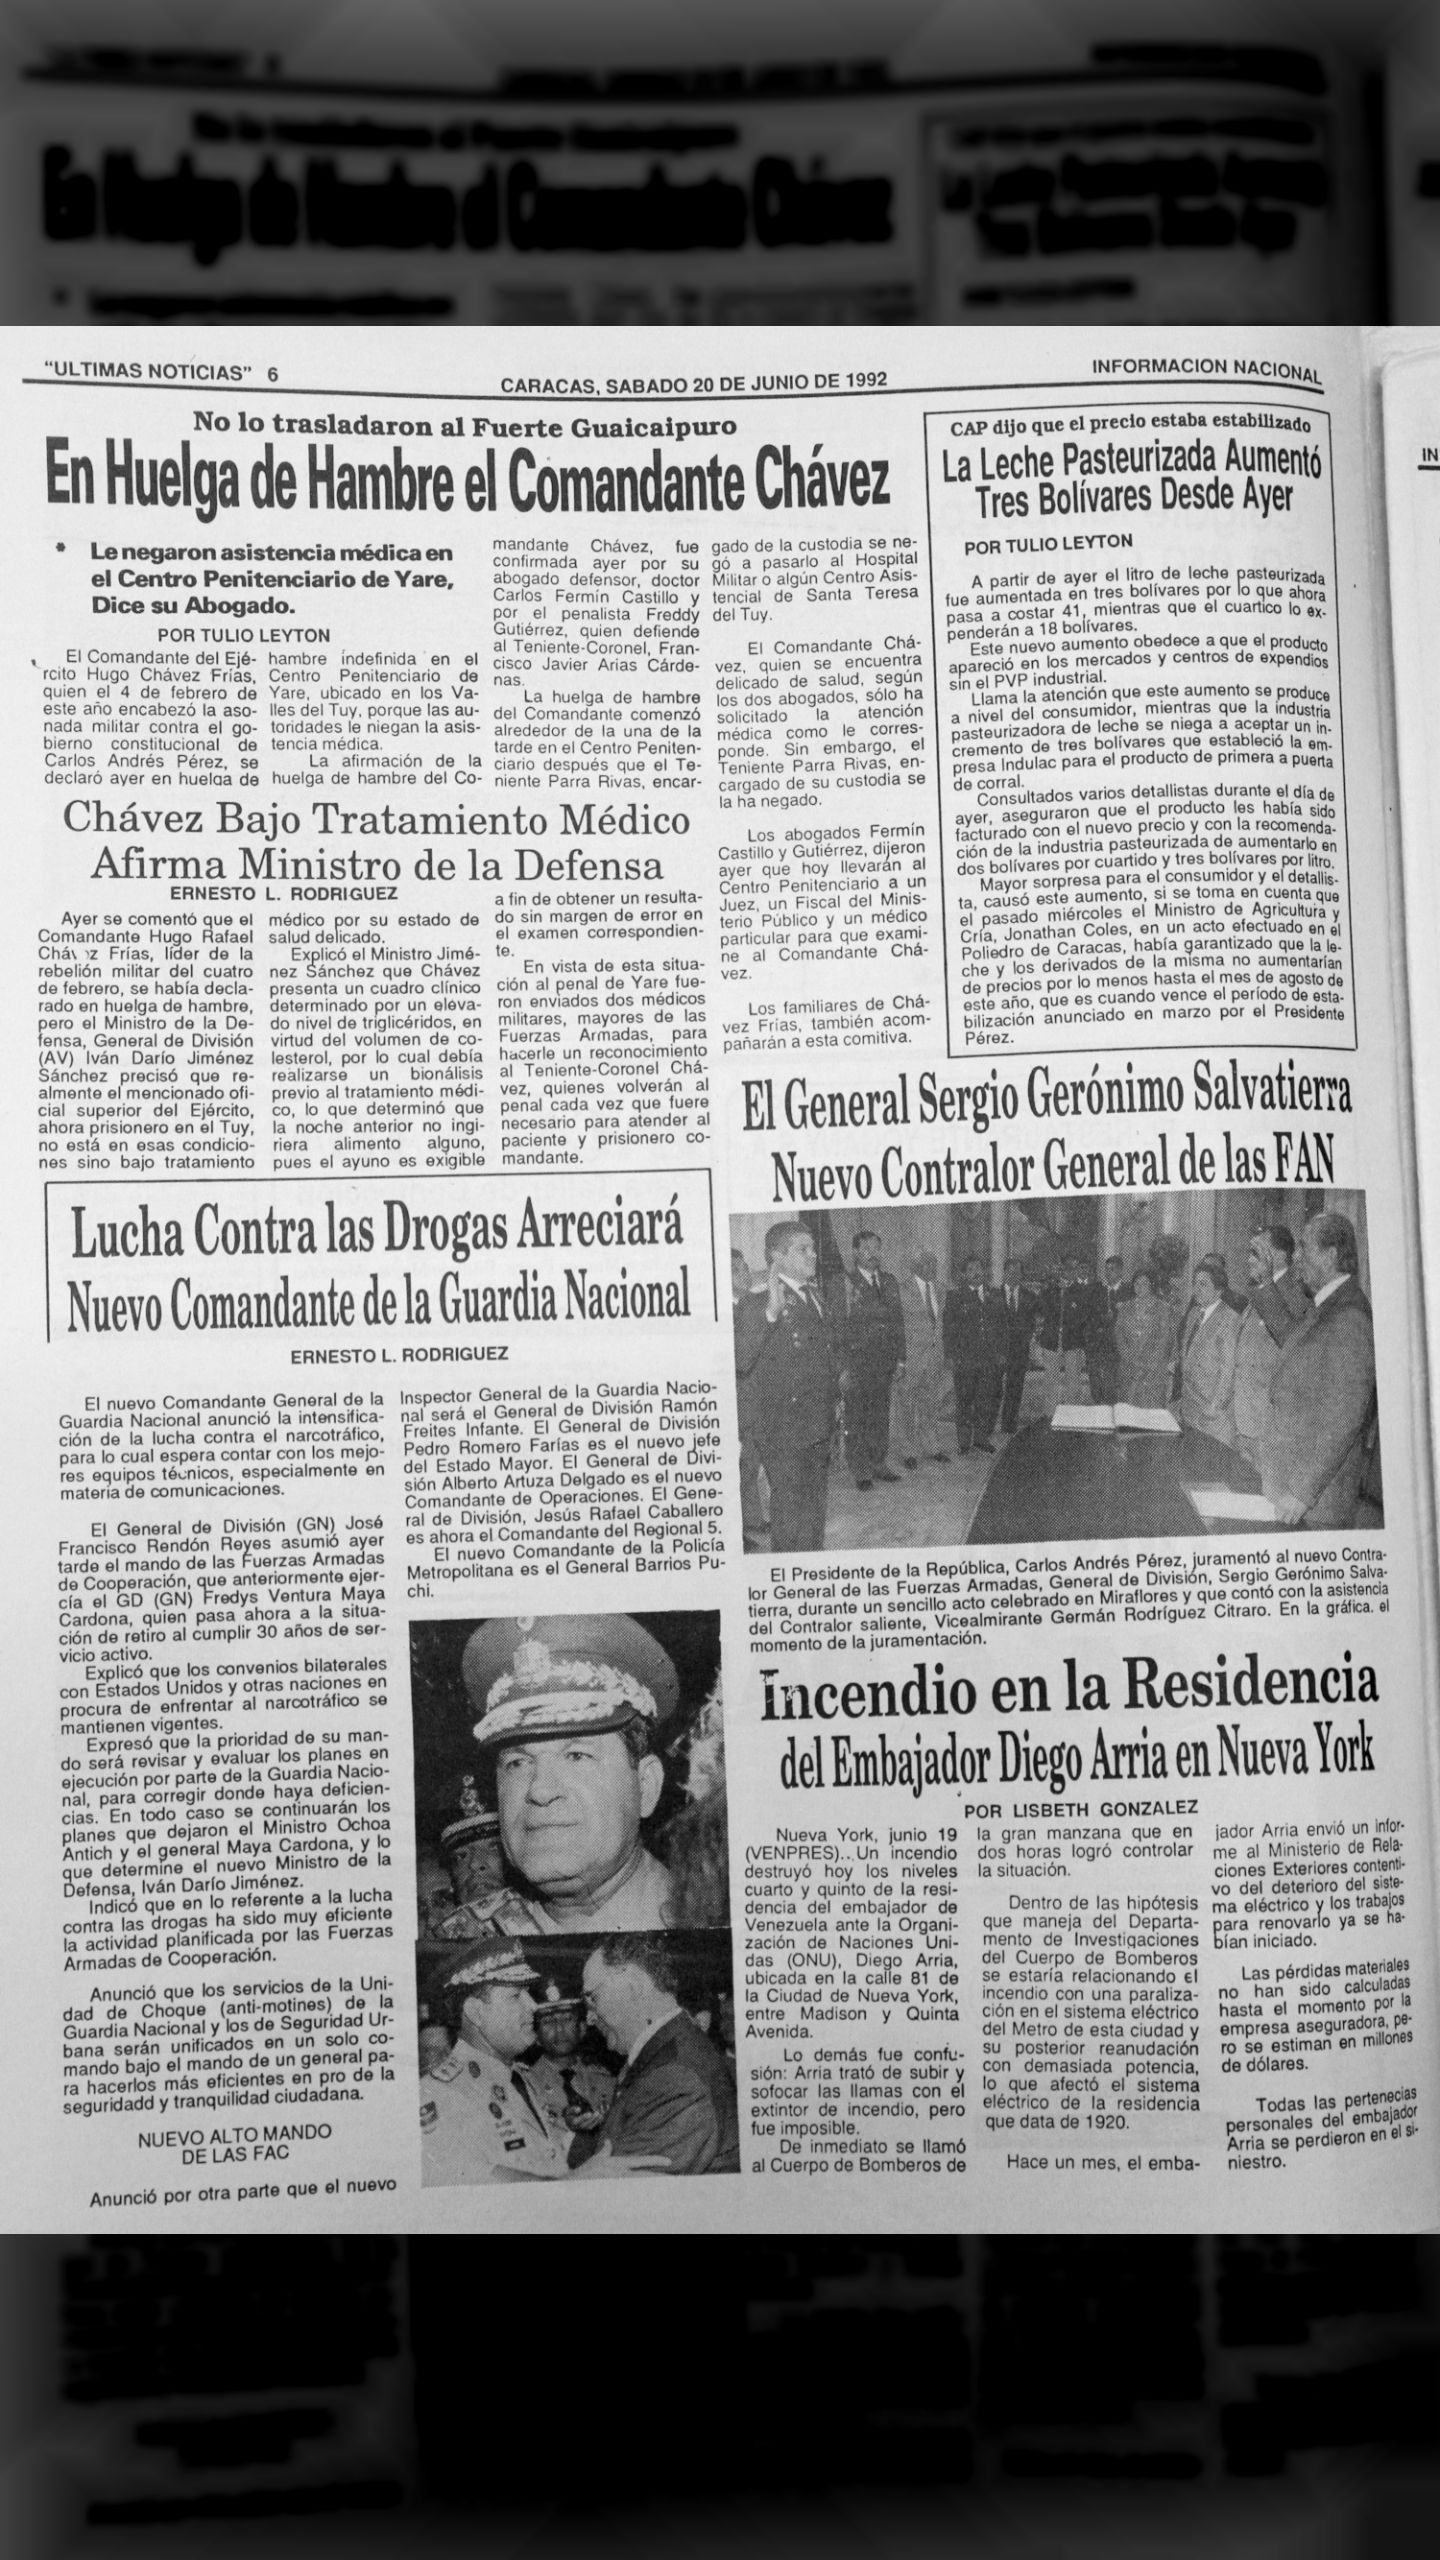 En huelga de hambre el Comandante Chávez, está bajo tratamiento médico afirma ministro de la defensa (Últimas Noticias, 20 de junio de 1992)